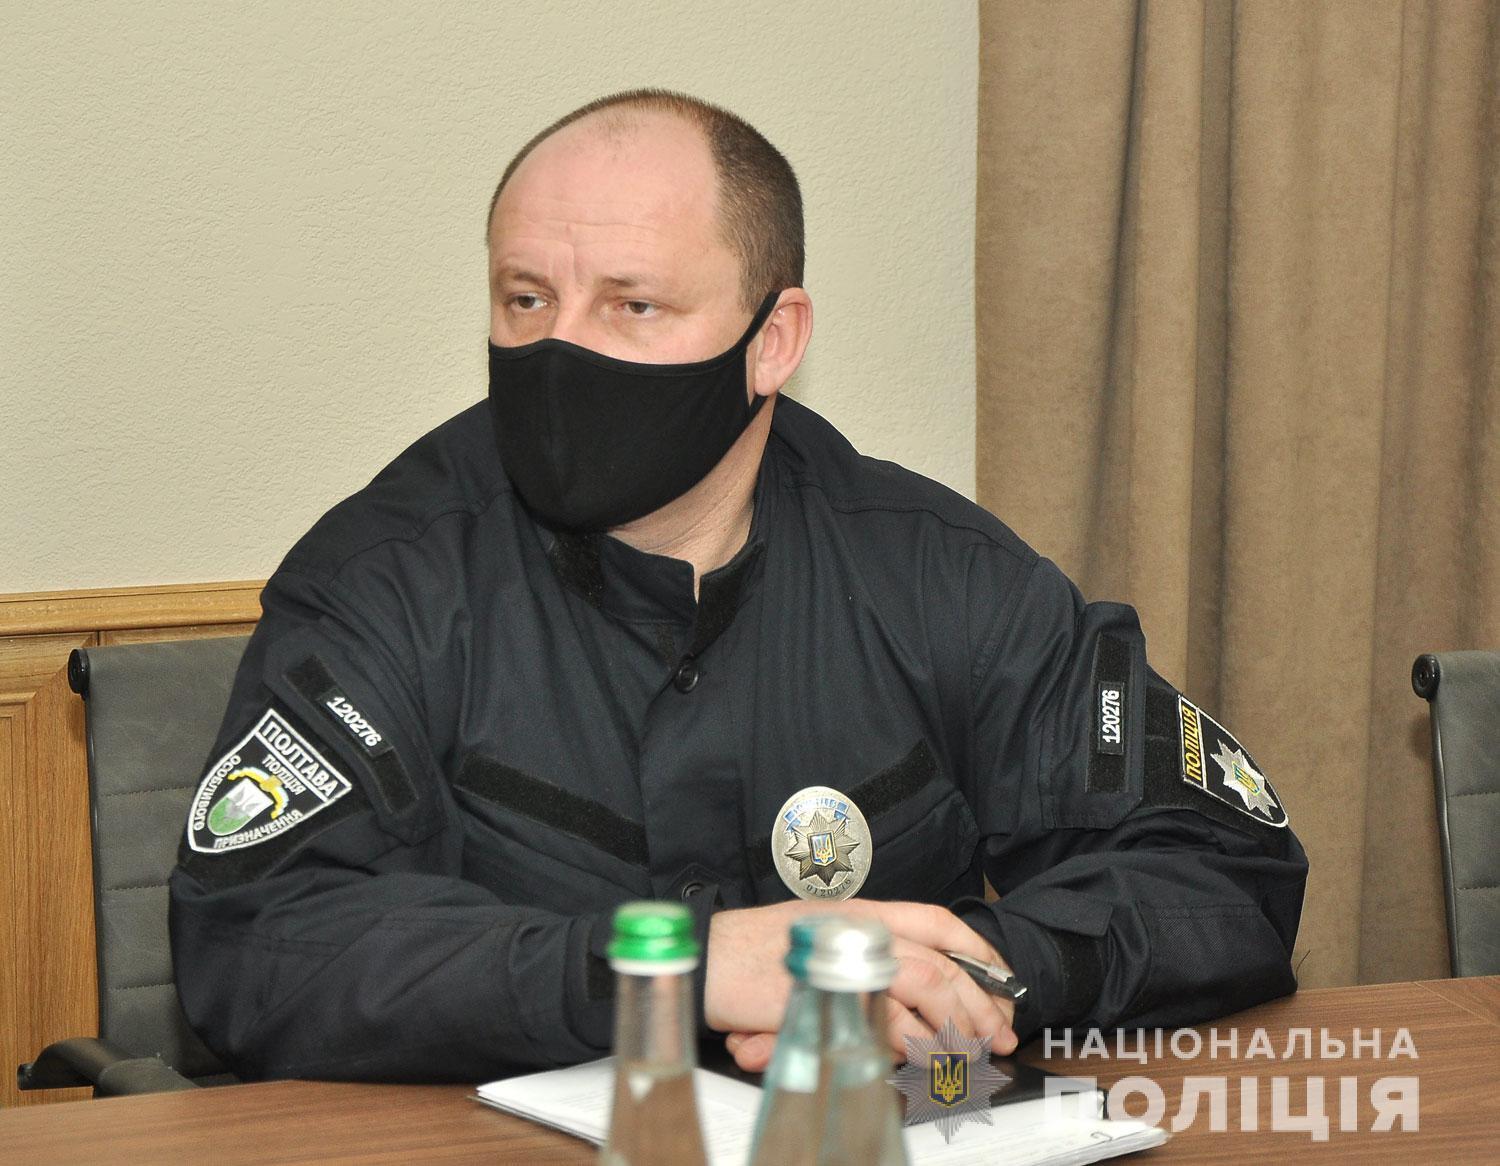 Поліція Полтавщини завжди готова протягнути руку підтримки тим, хто цього потребує - очільник поліції області Іван Вигівський